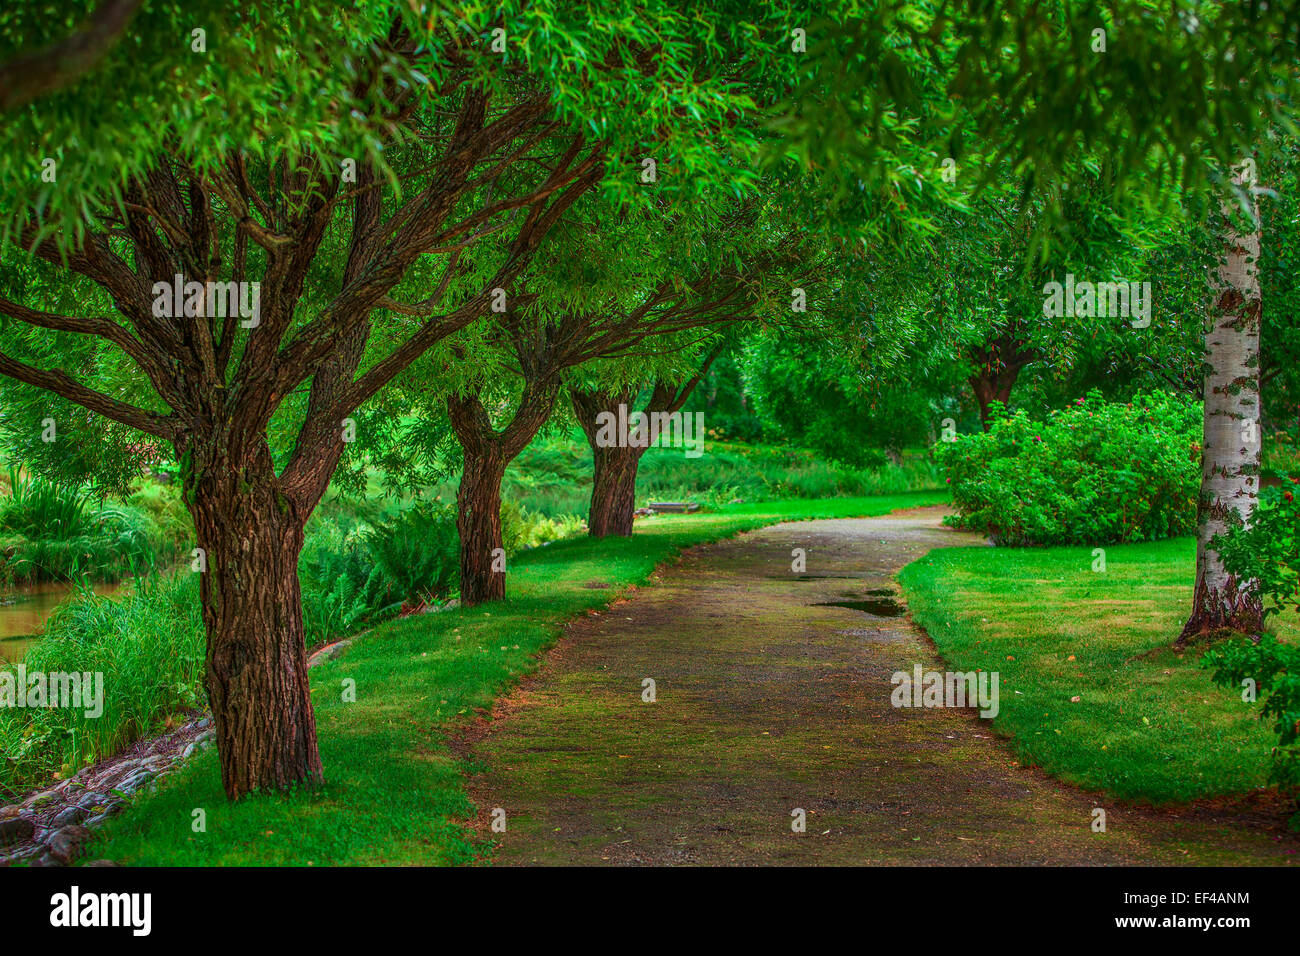 Schöne Fee Gehweg mit großen Bäumen. Kräftige grüne Farben. Stockfoto